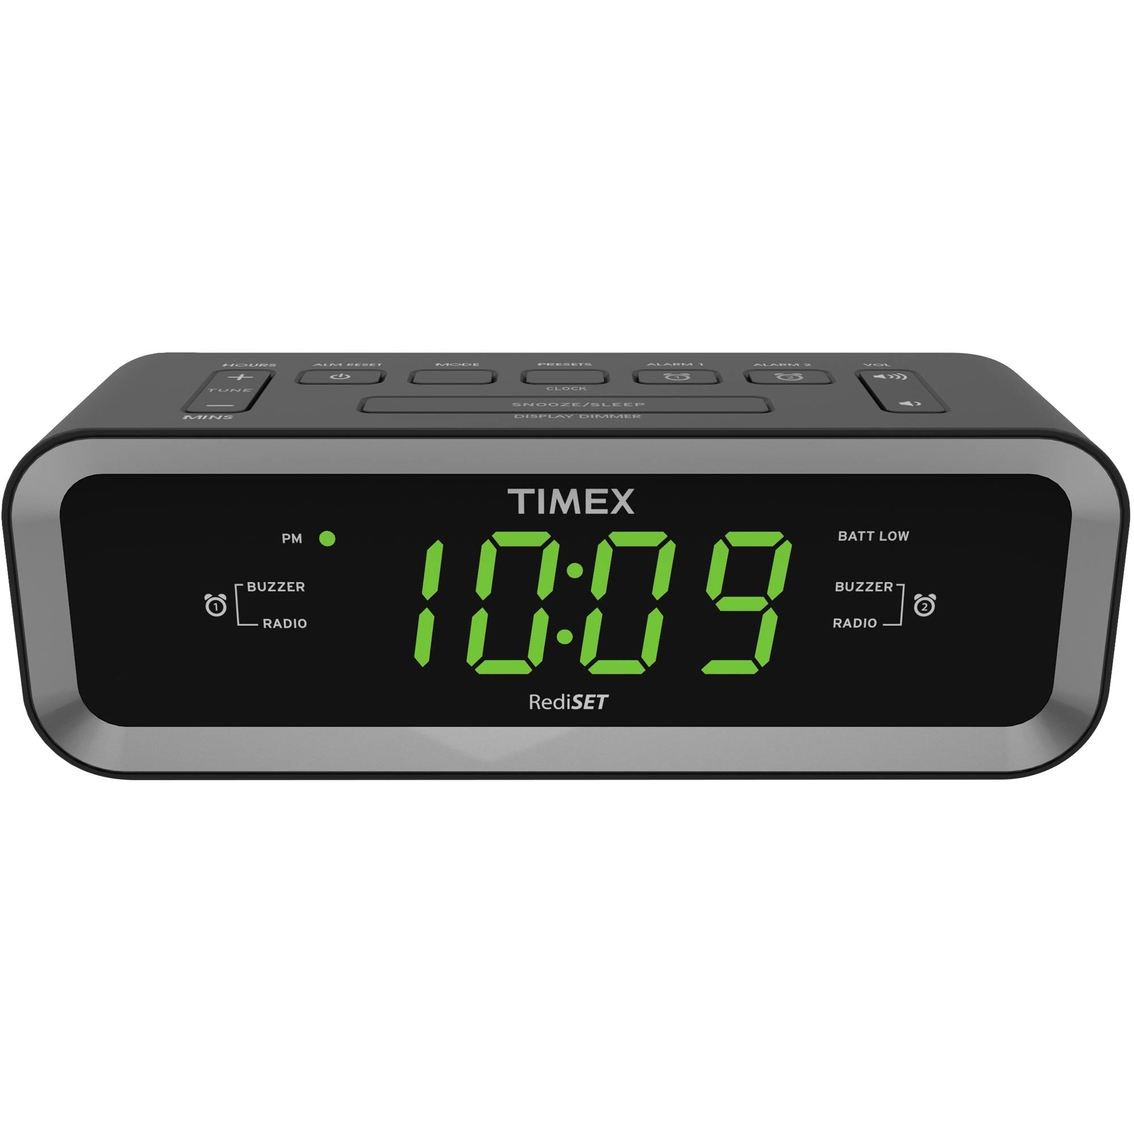 timex alarm clock radio instructions t235y